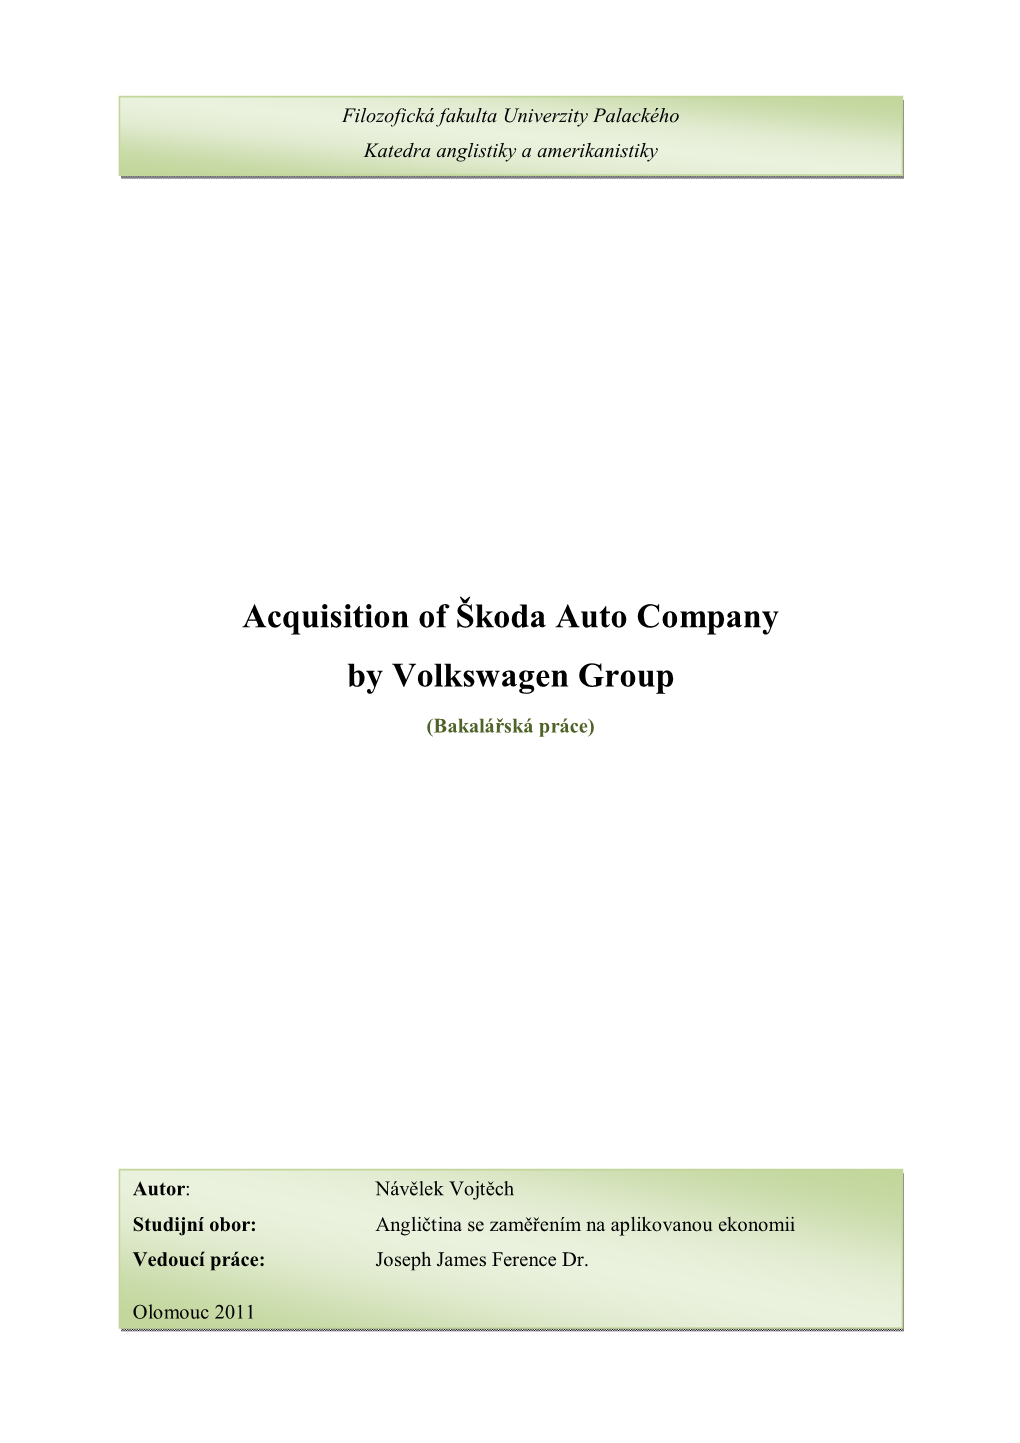 Acquisition of Škoda Auto Company by Volkswagen Group Návělek Vojtěch